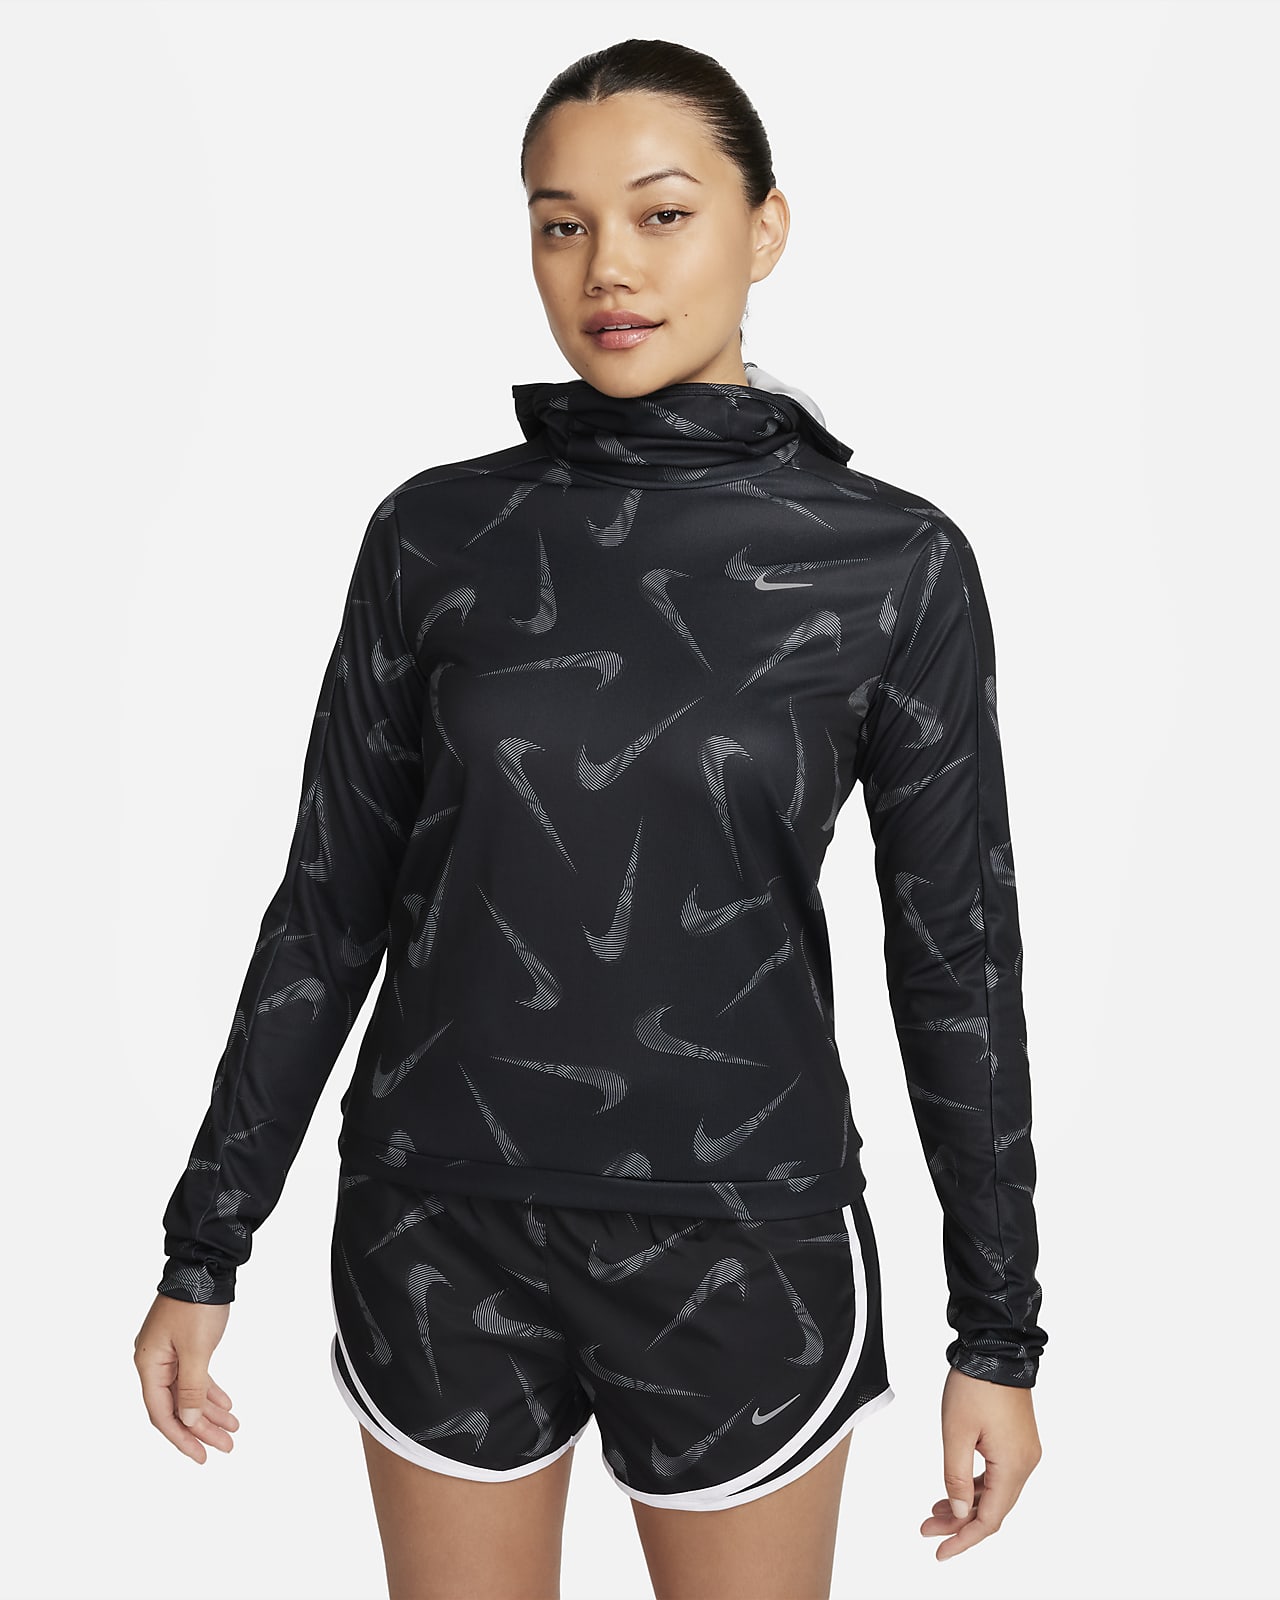 Nike Swoosh hardloopjack met capuchon en print voor dames